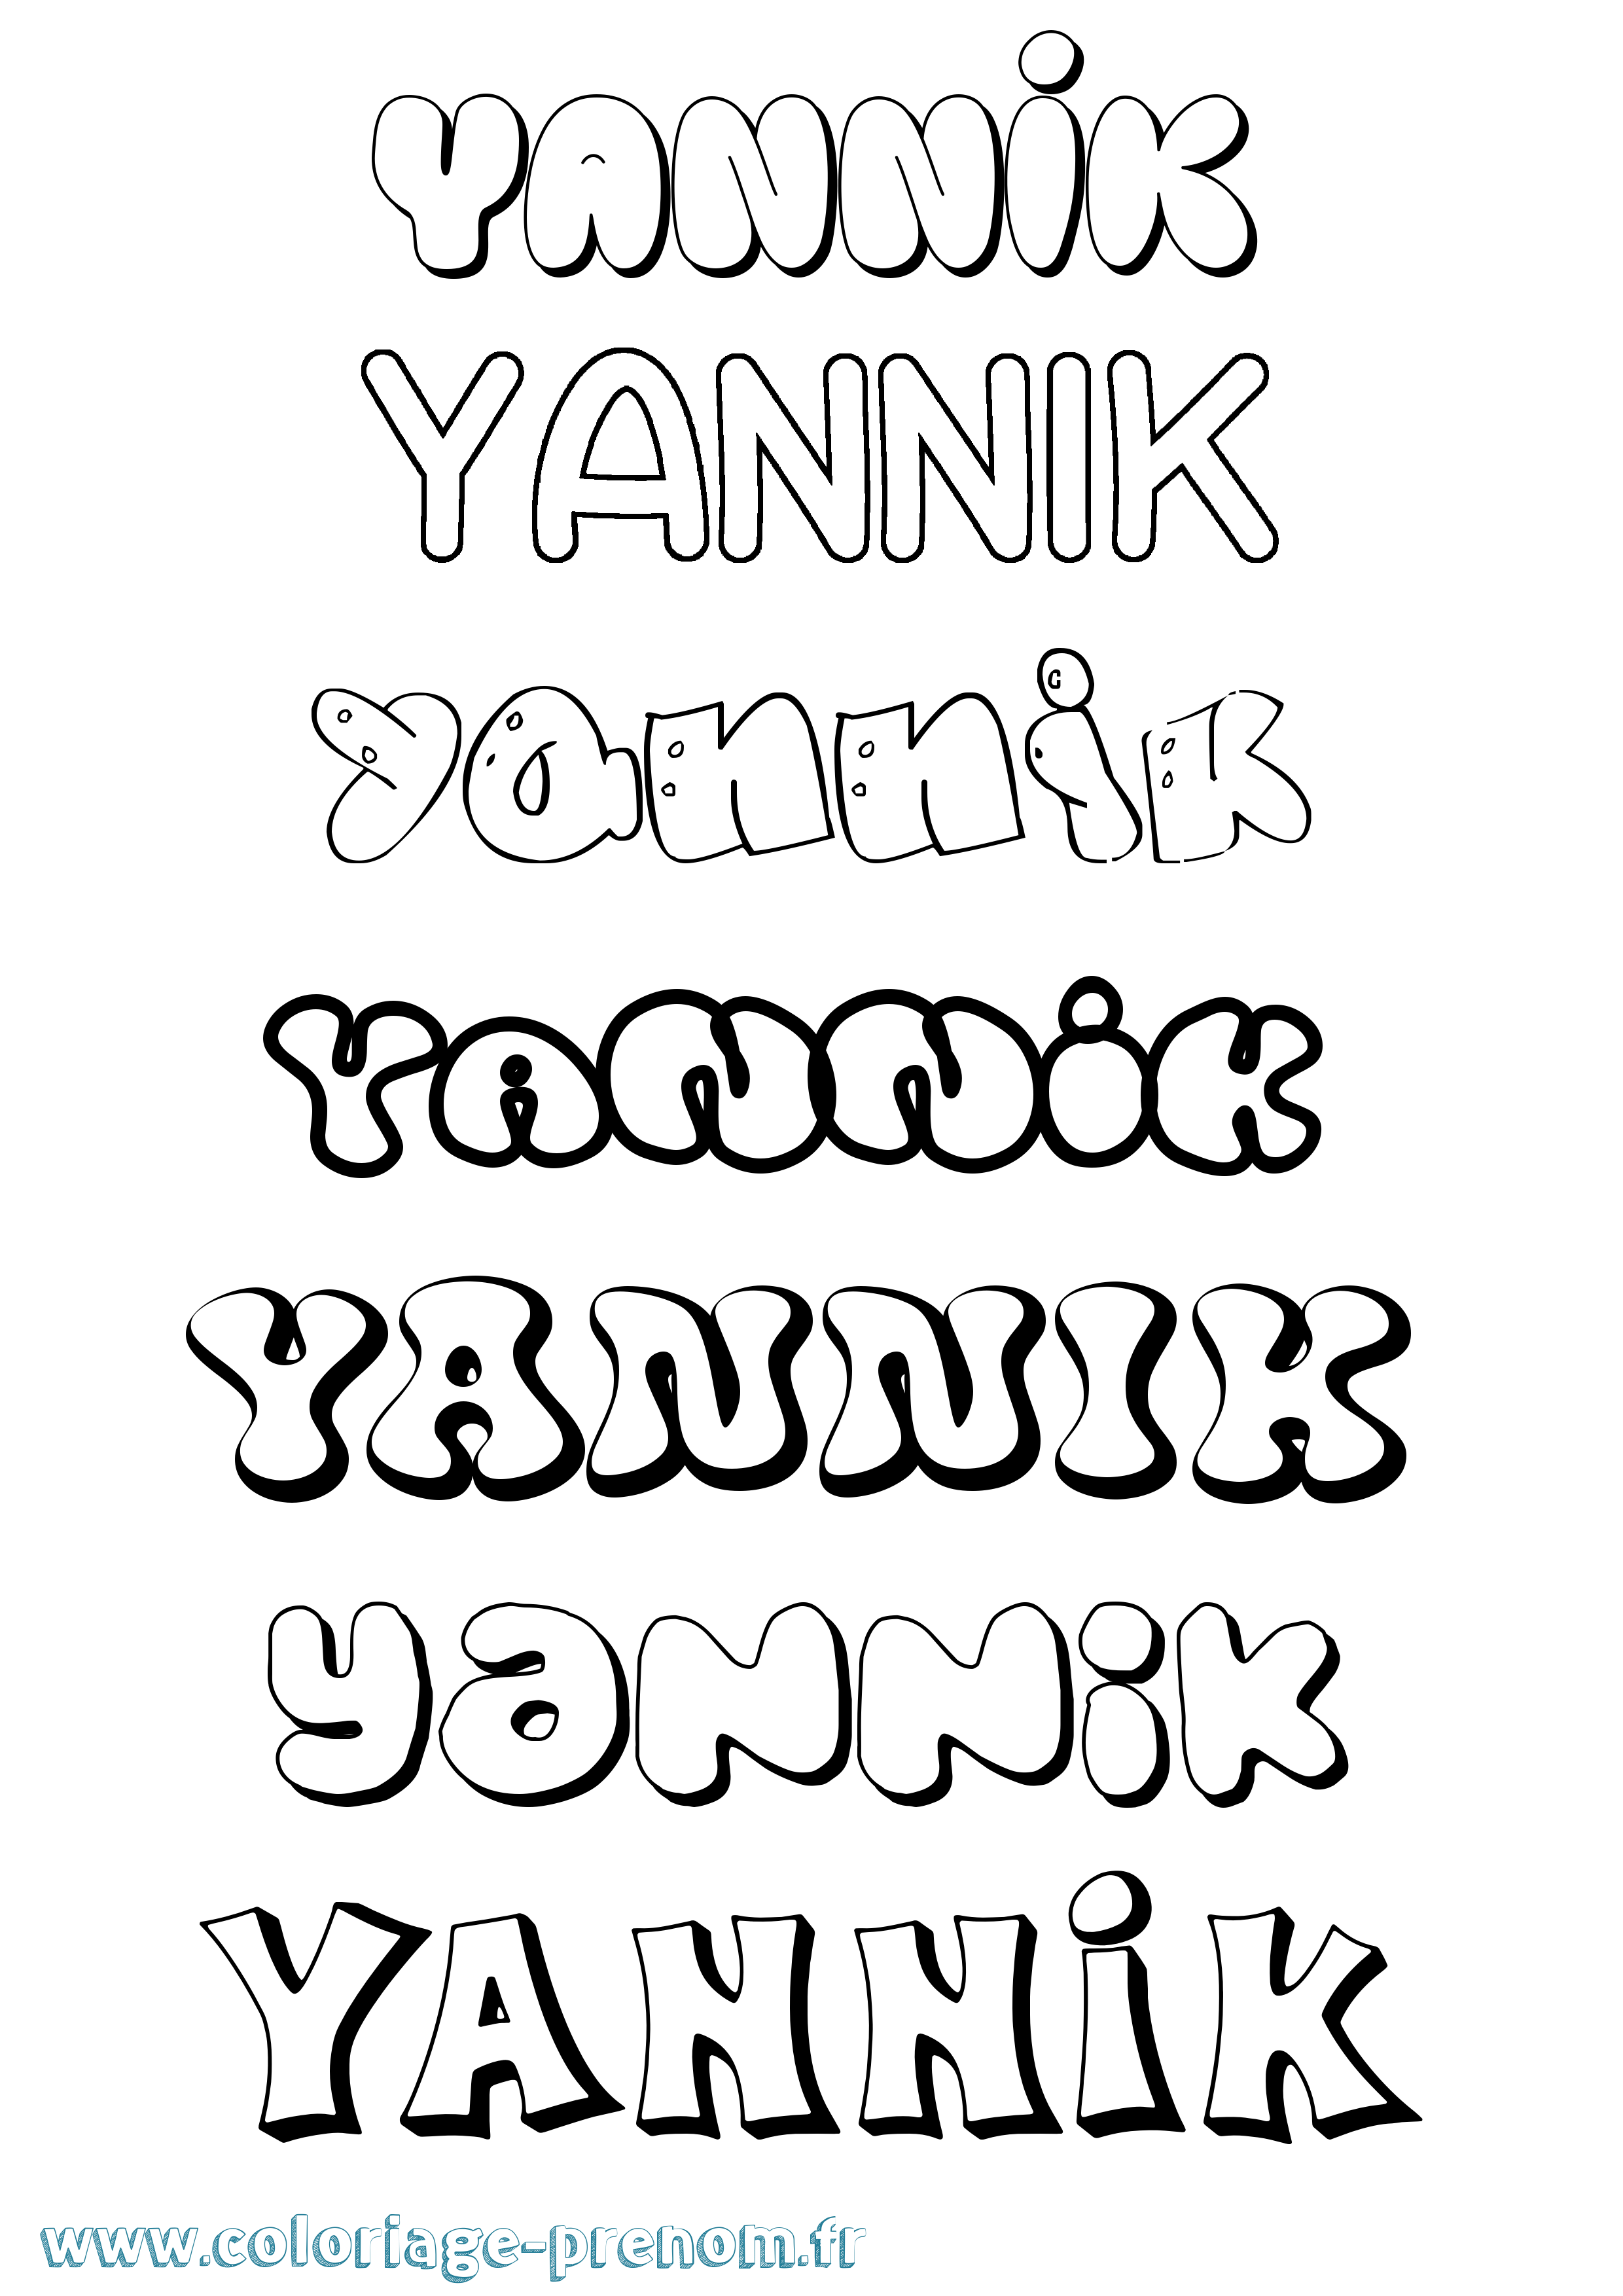 Coloriage prénom Yannik Bubble